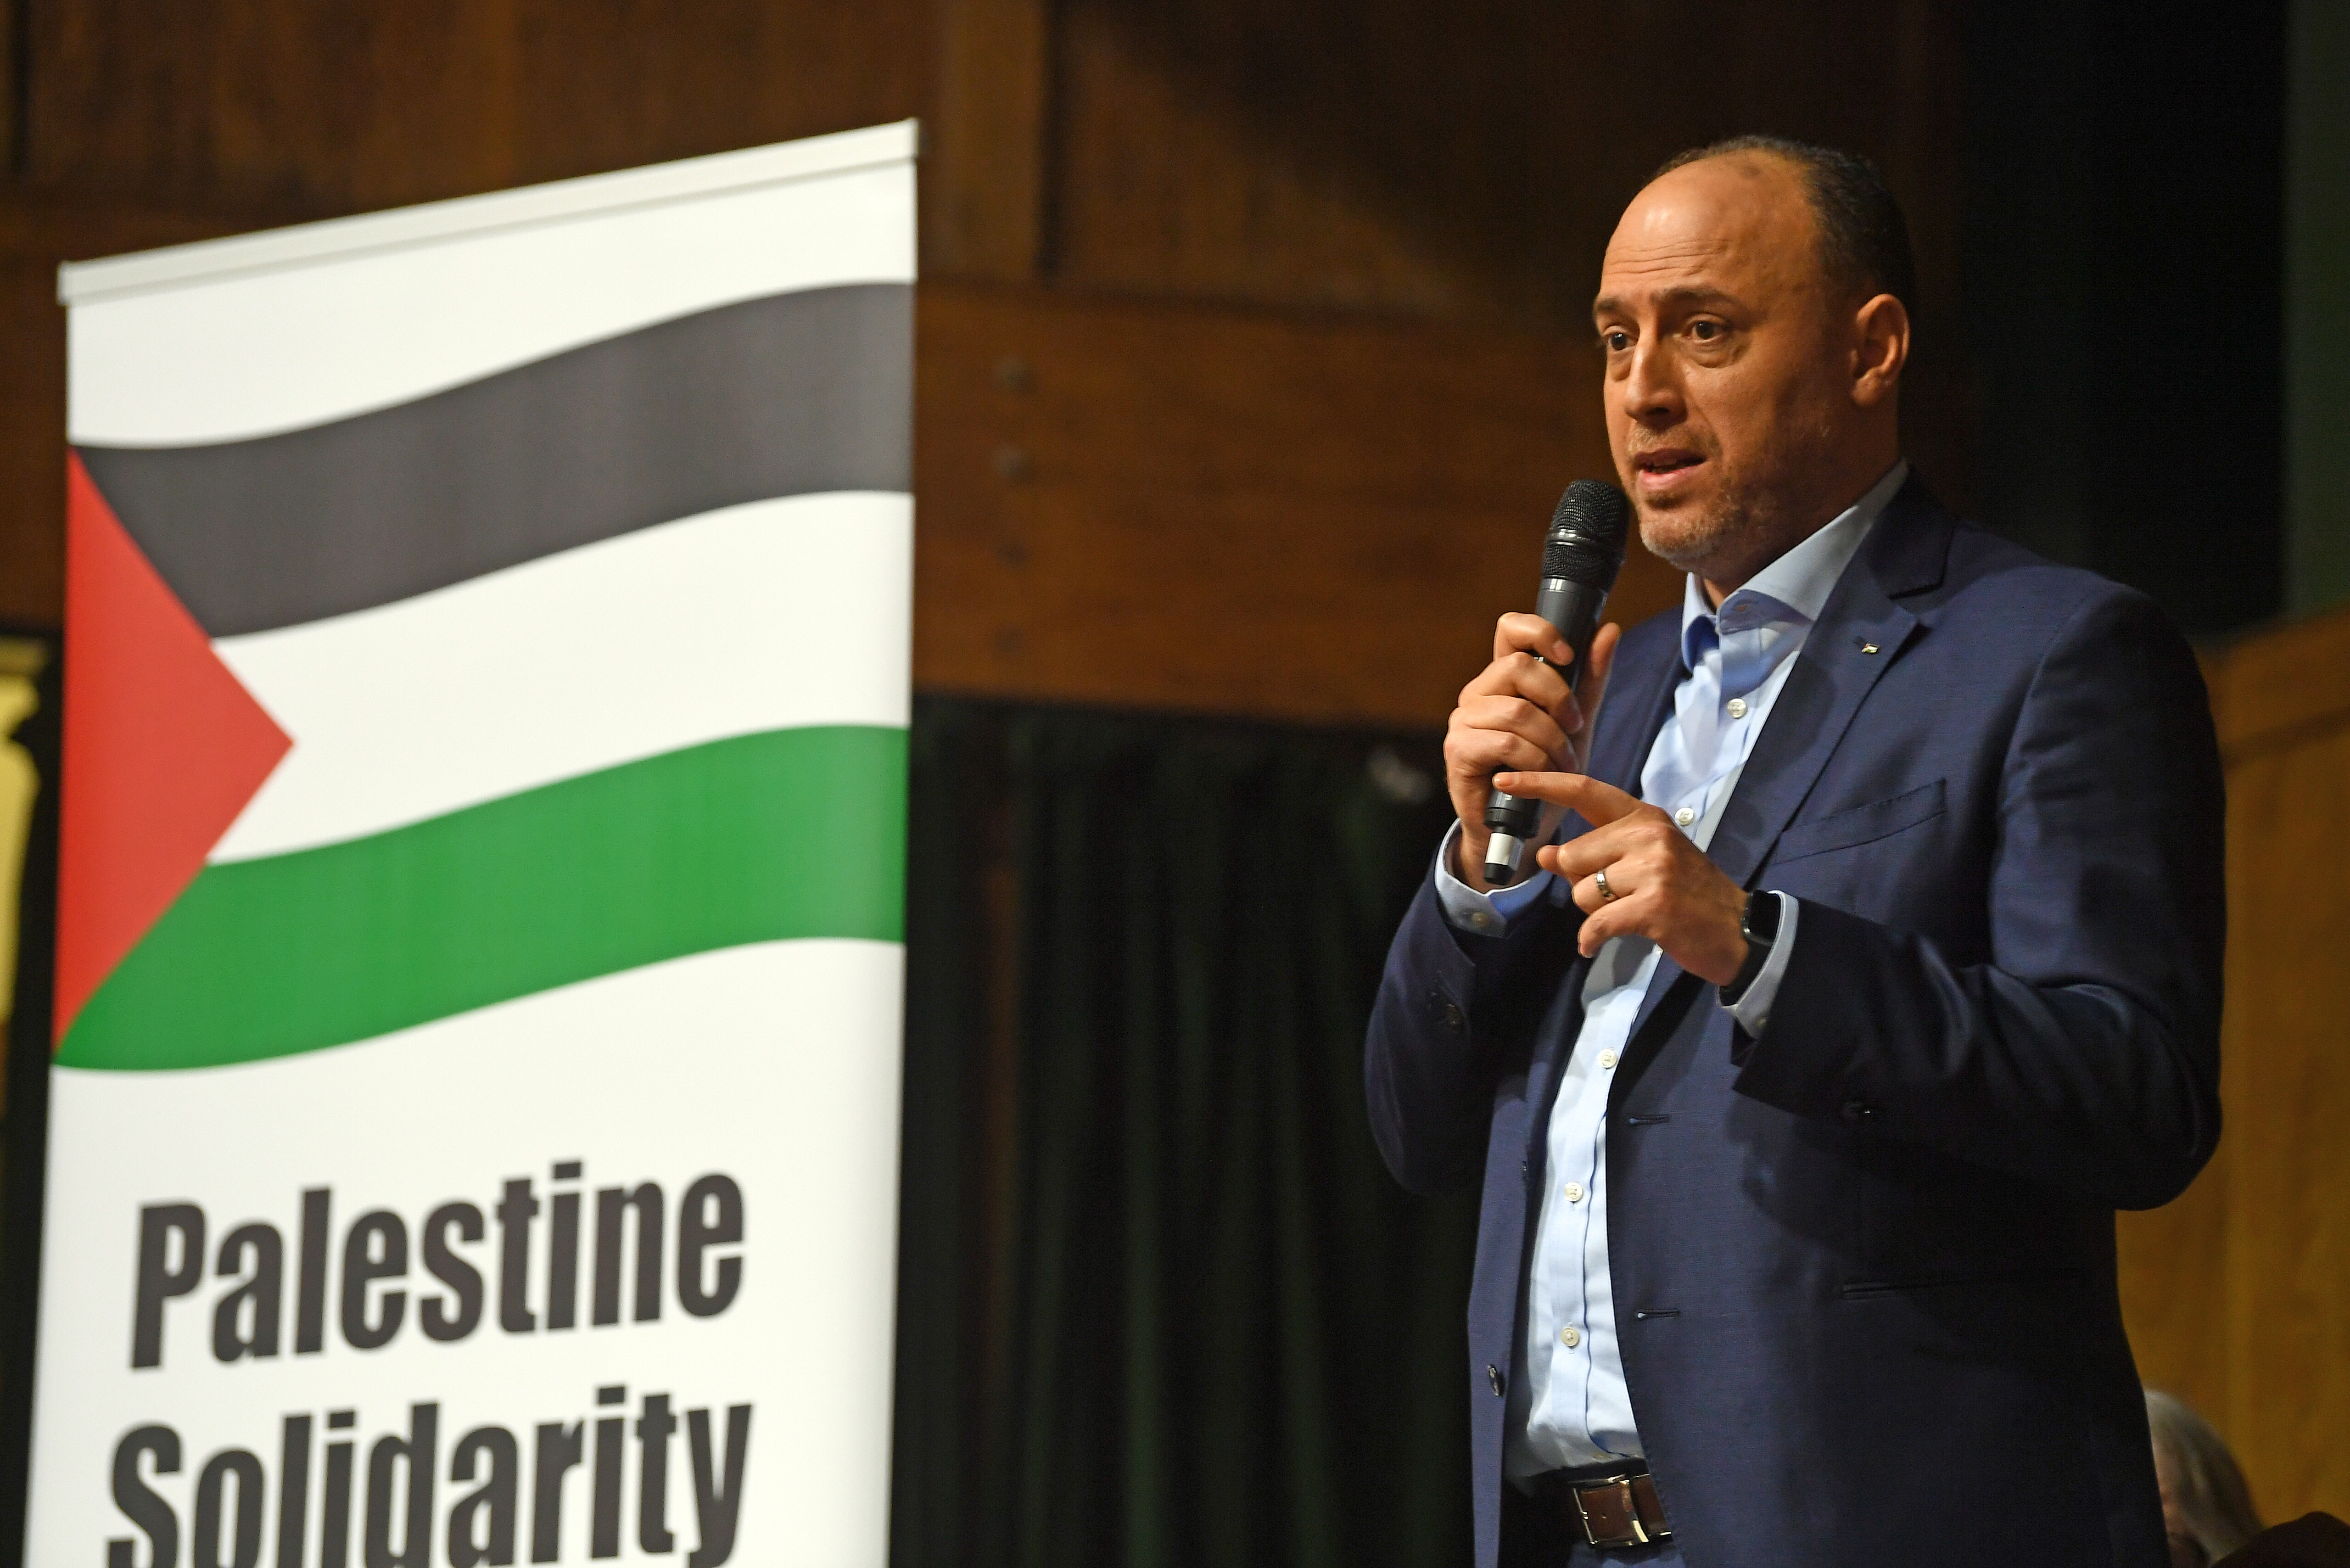 El embajador Husam Zomlot, jefe de la misión palestina en Gran Bretaña, habla en Exist, Resist, Return: ¡No al trato de Trump! organizado por la Campaña de Solidaridad con Palestina en Conway Hall, Londres.